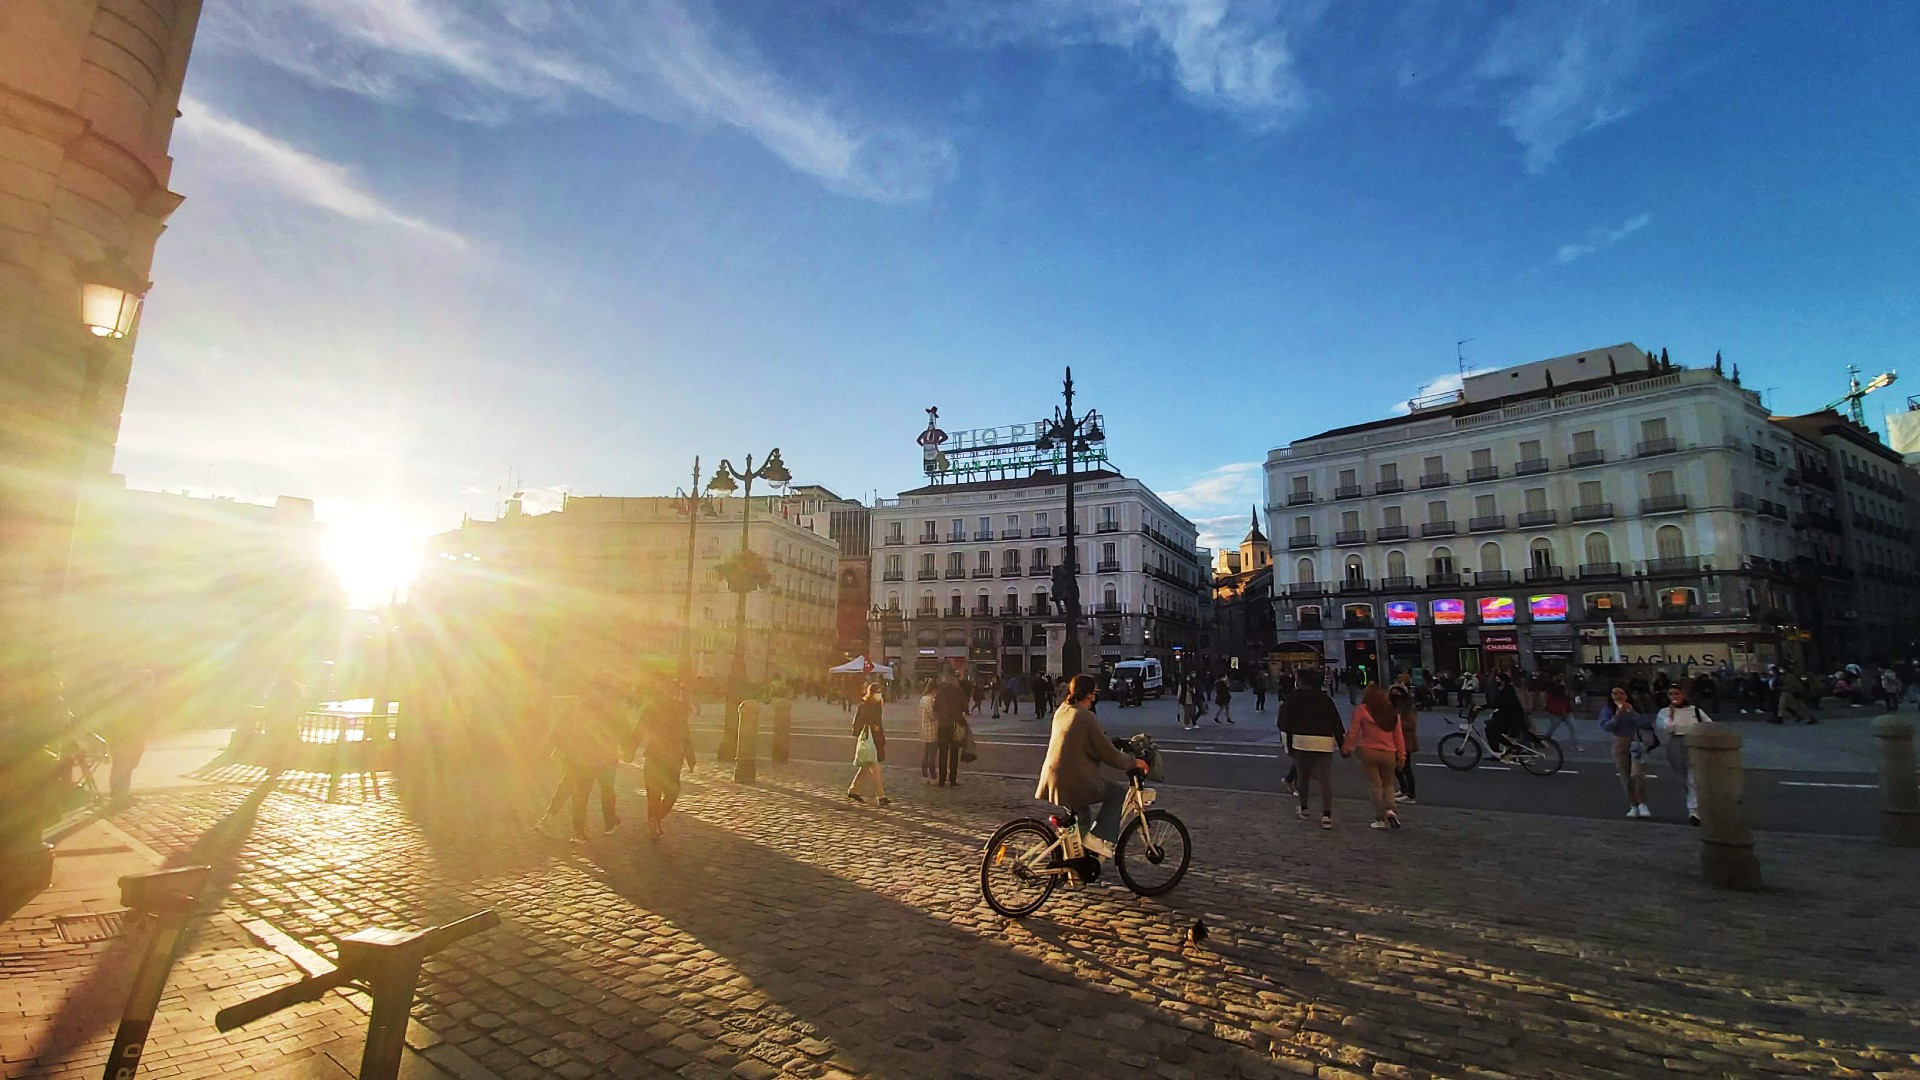 El barrio más pequeño en el centro de Madrid, Sol es el epicentro político, histórico, comercial  y de transportes de la capital española